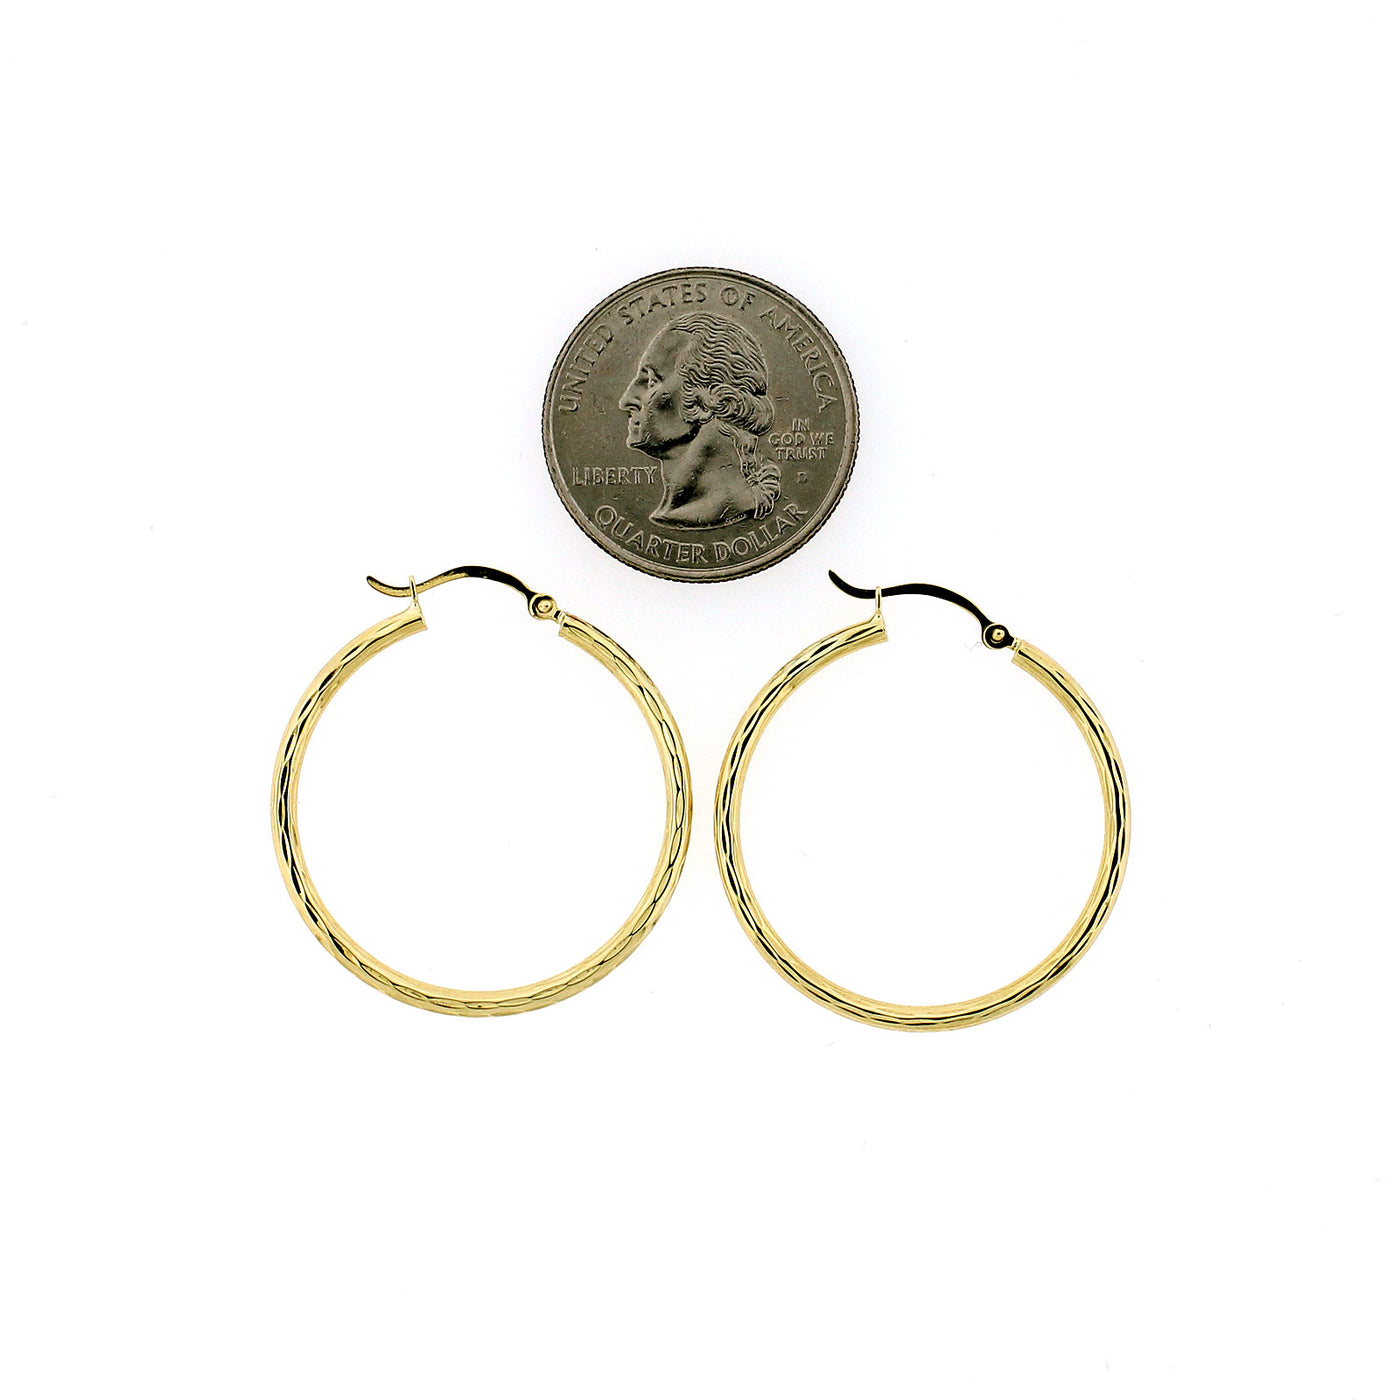 Real 10K Yellow Gold 32mm X 2mm 1.25" Diamond Cut Medium Plain Hoop Earrings